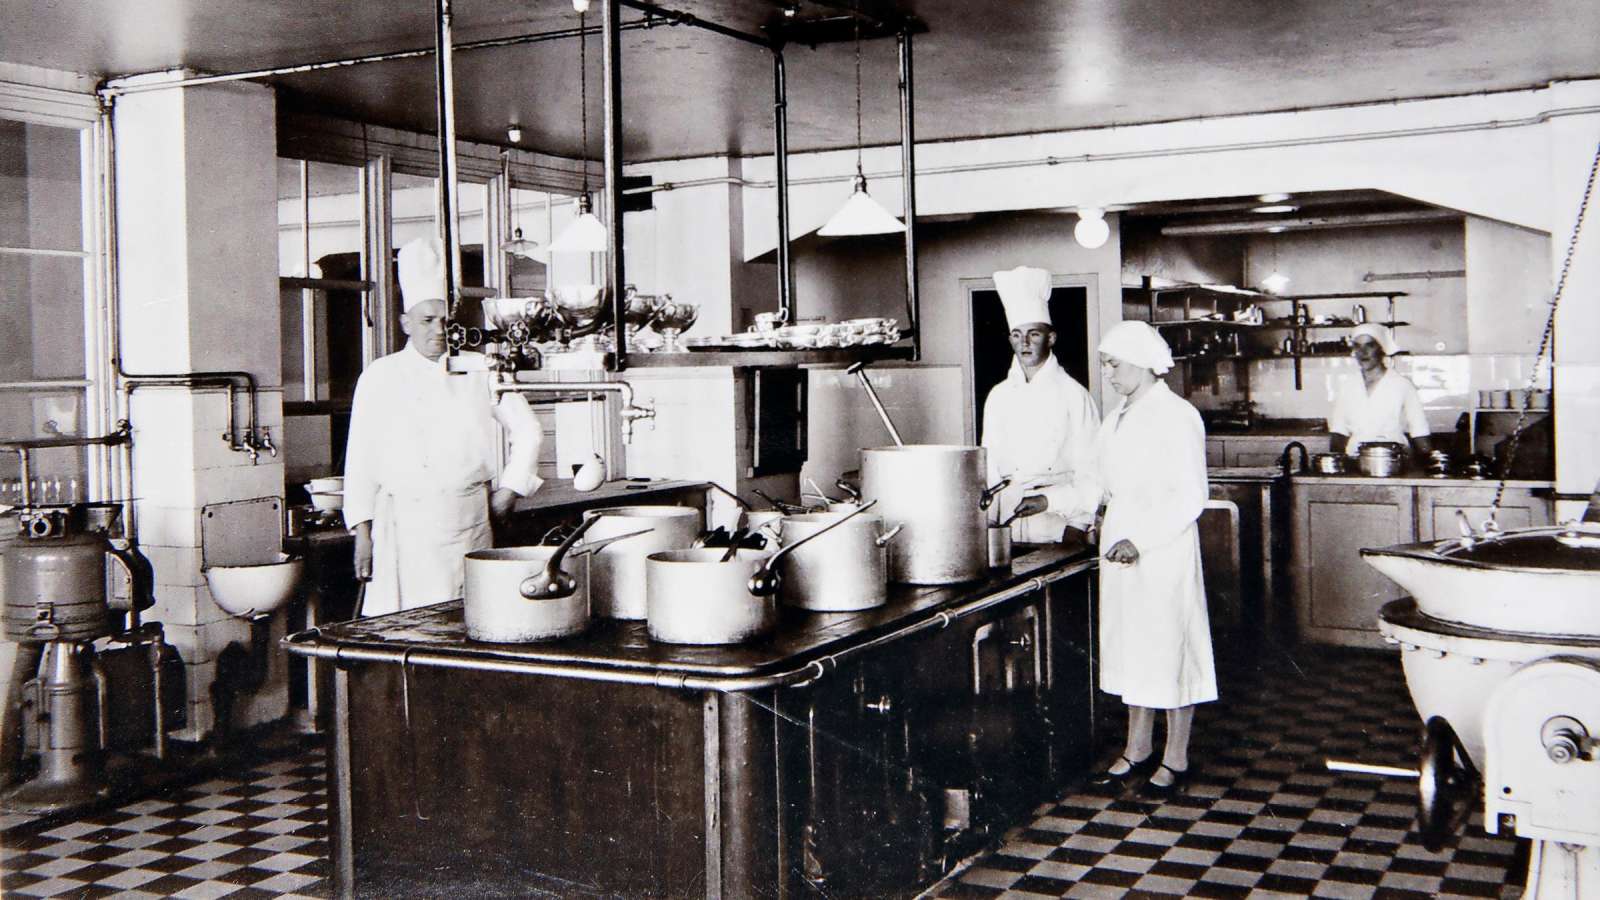 Tammerin keittiö on aina ollut kuuluisa herkuistaan.